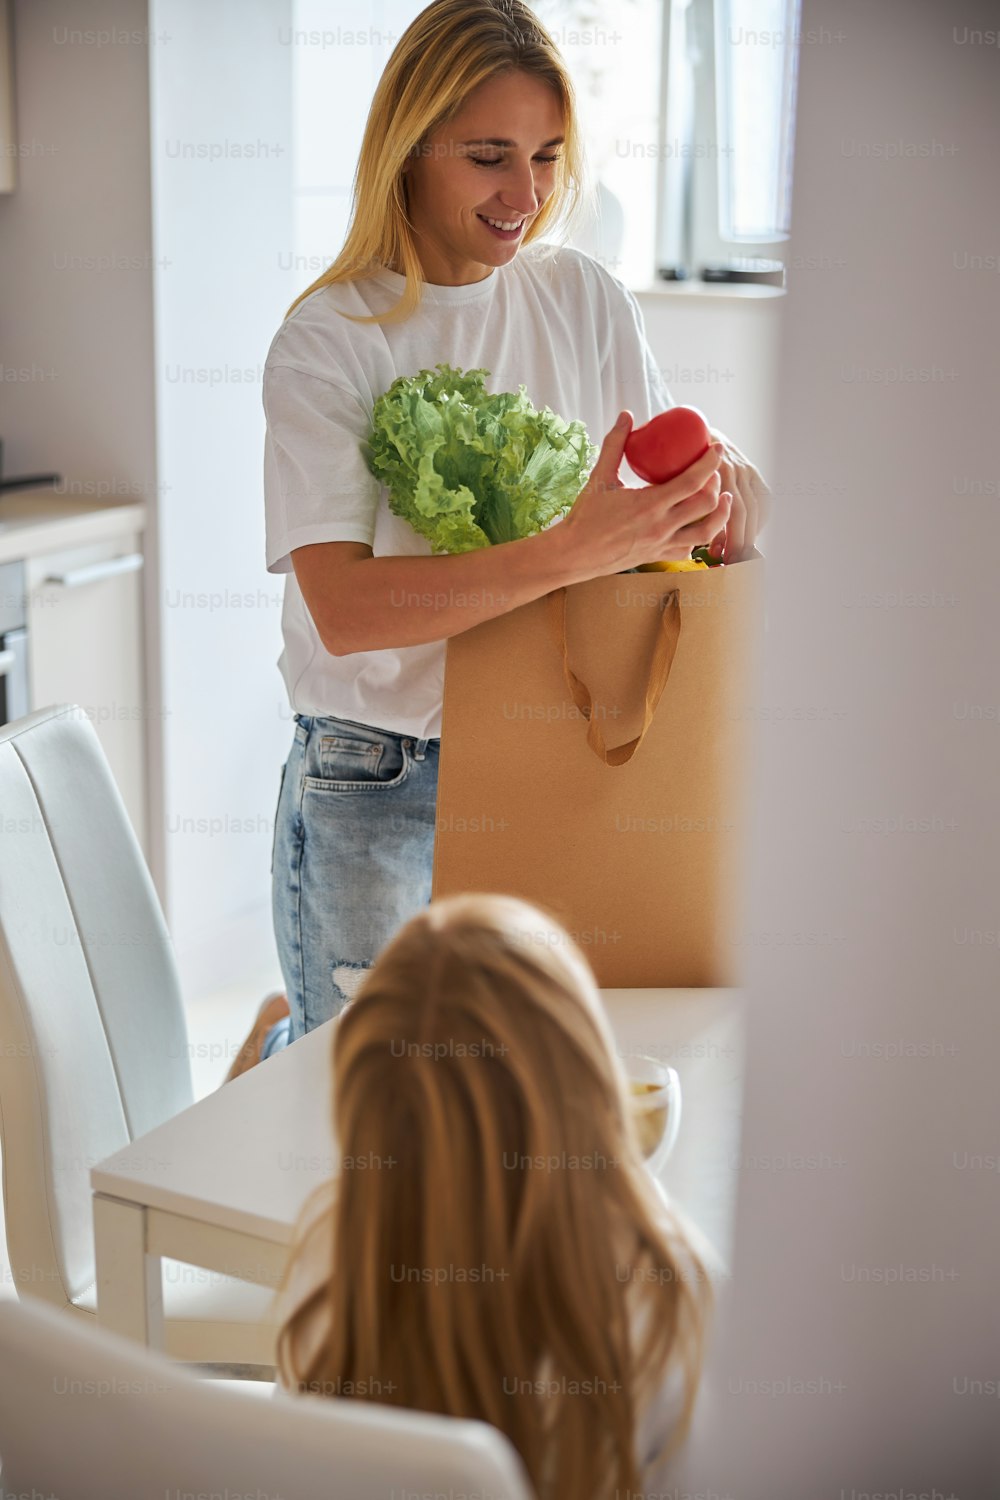 野菜を手に持ちながら、紙の買い物袋を持って白い台所のテーブルの近くに立っている大人の白人の美しい女性